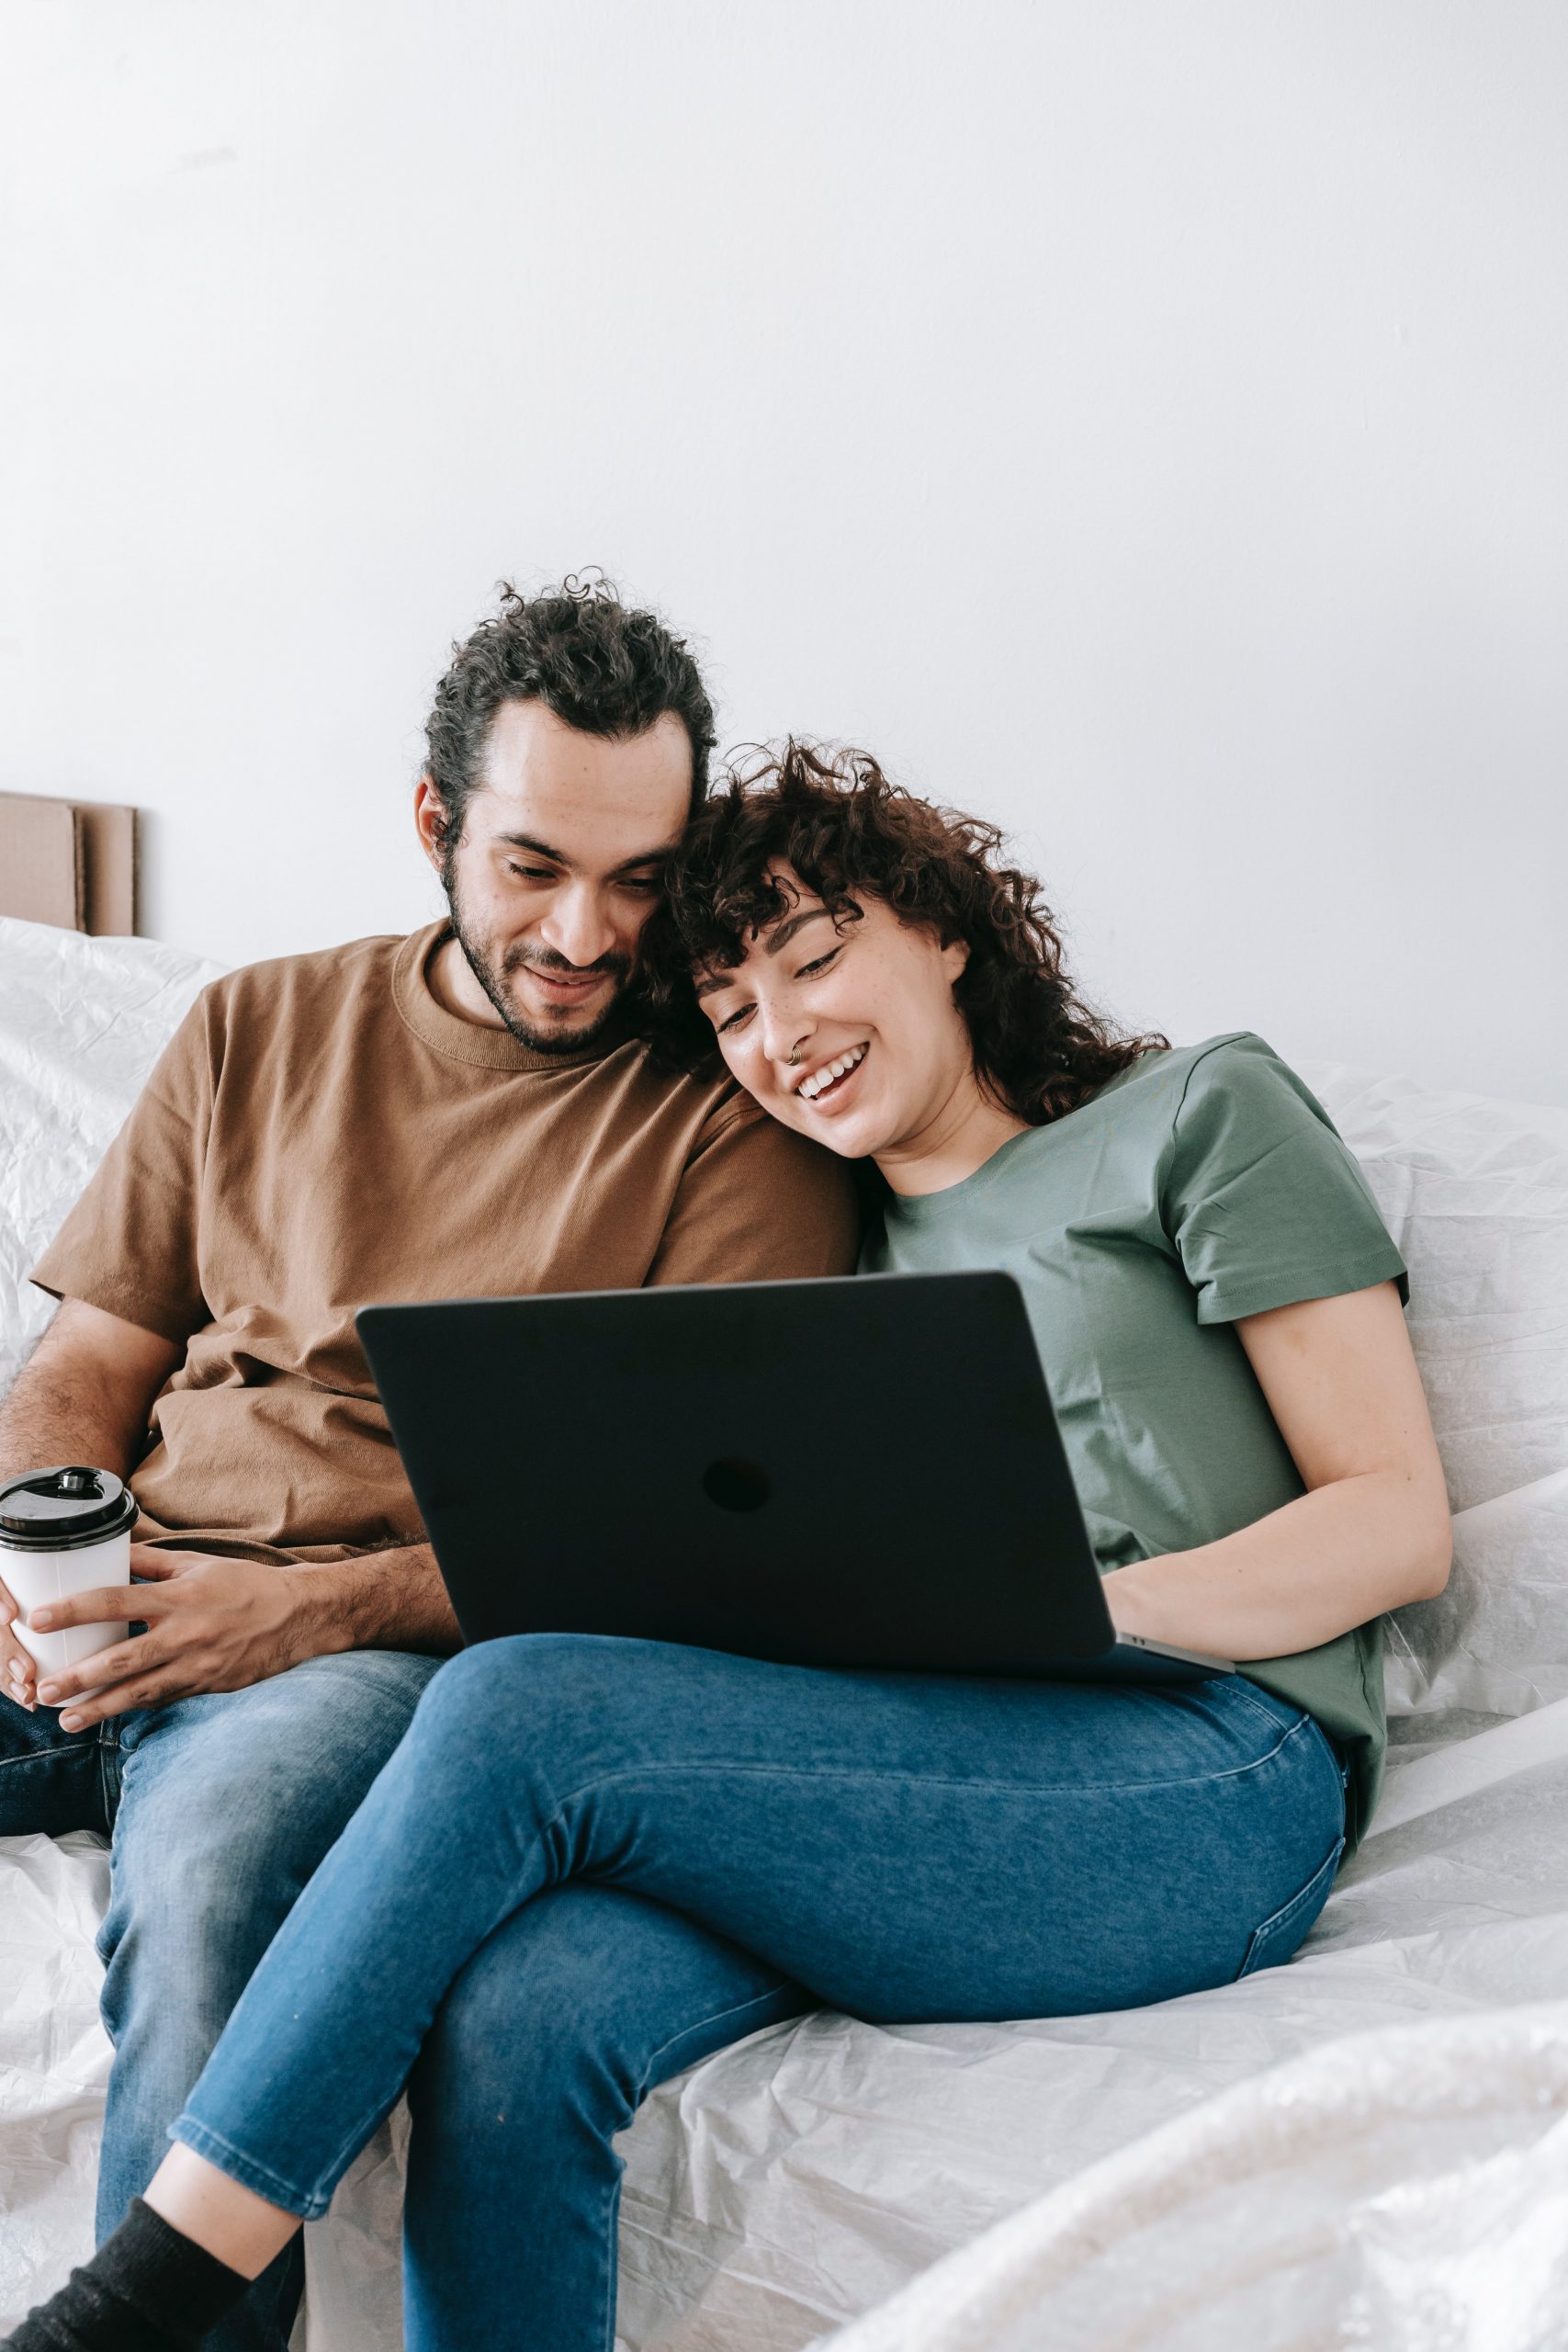 Glückliches Paar, das gemeinsam auf einem Bett sitzt und auf einem Laptop recherchiert, vielleicht um günstige Kredite zu vergleichen oder einen Online-Kreditantrag zu stellen, in einem gemütlichen häuslichen Umfeld.